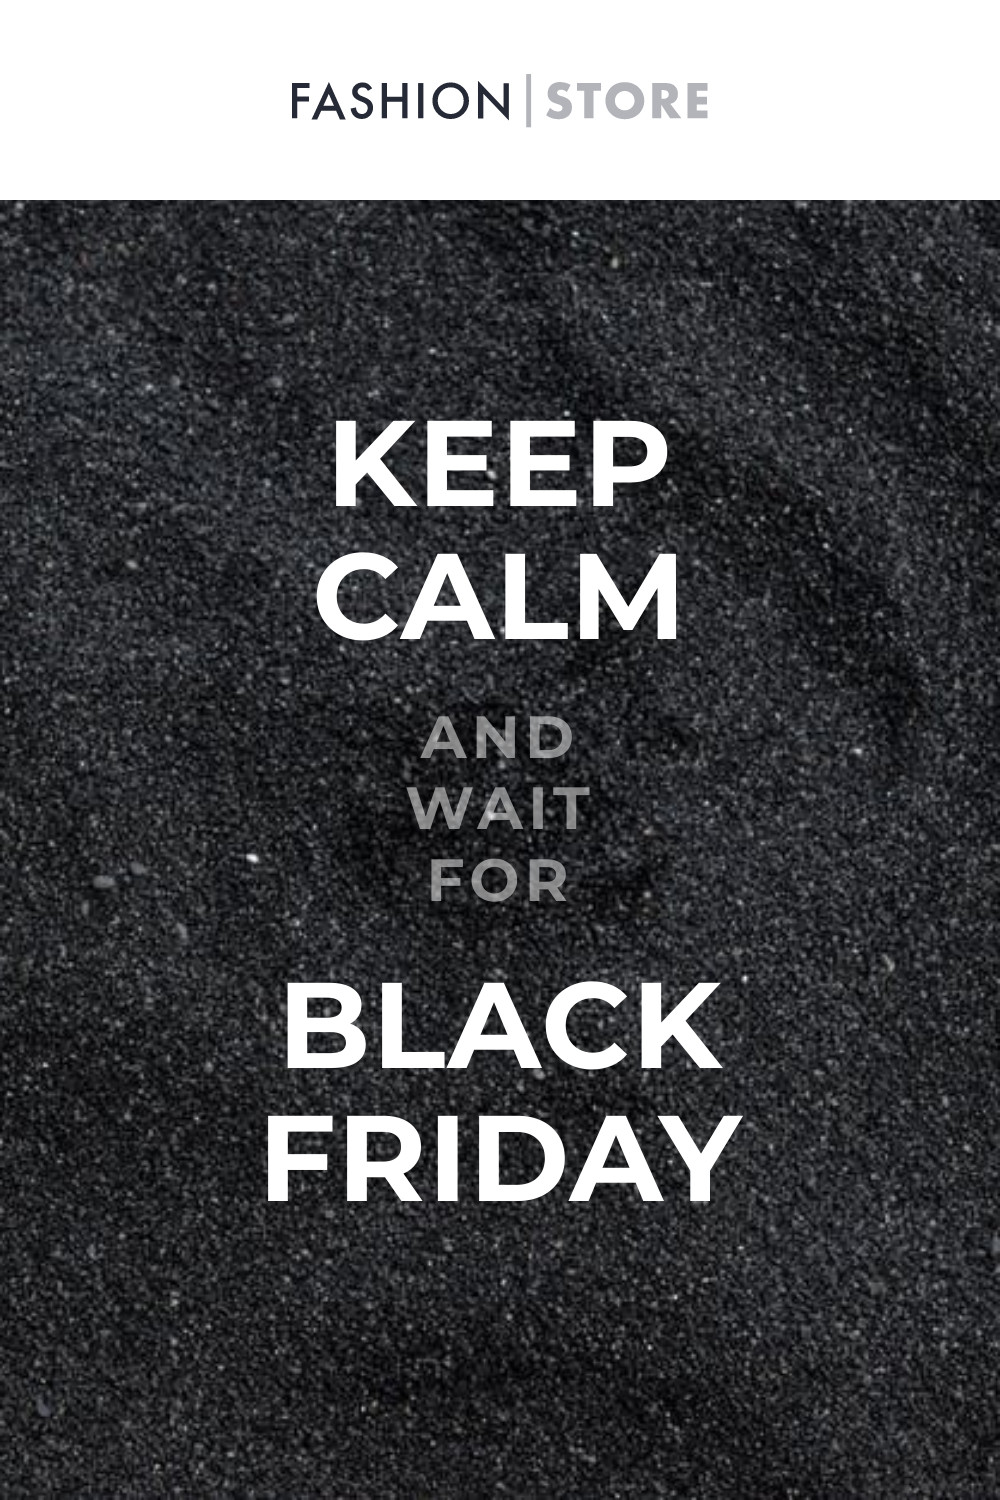 Keep Calm Black Friday Fashion